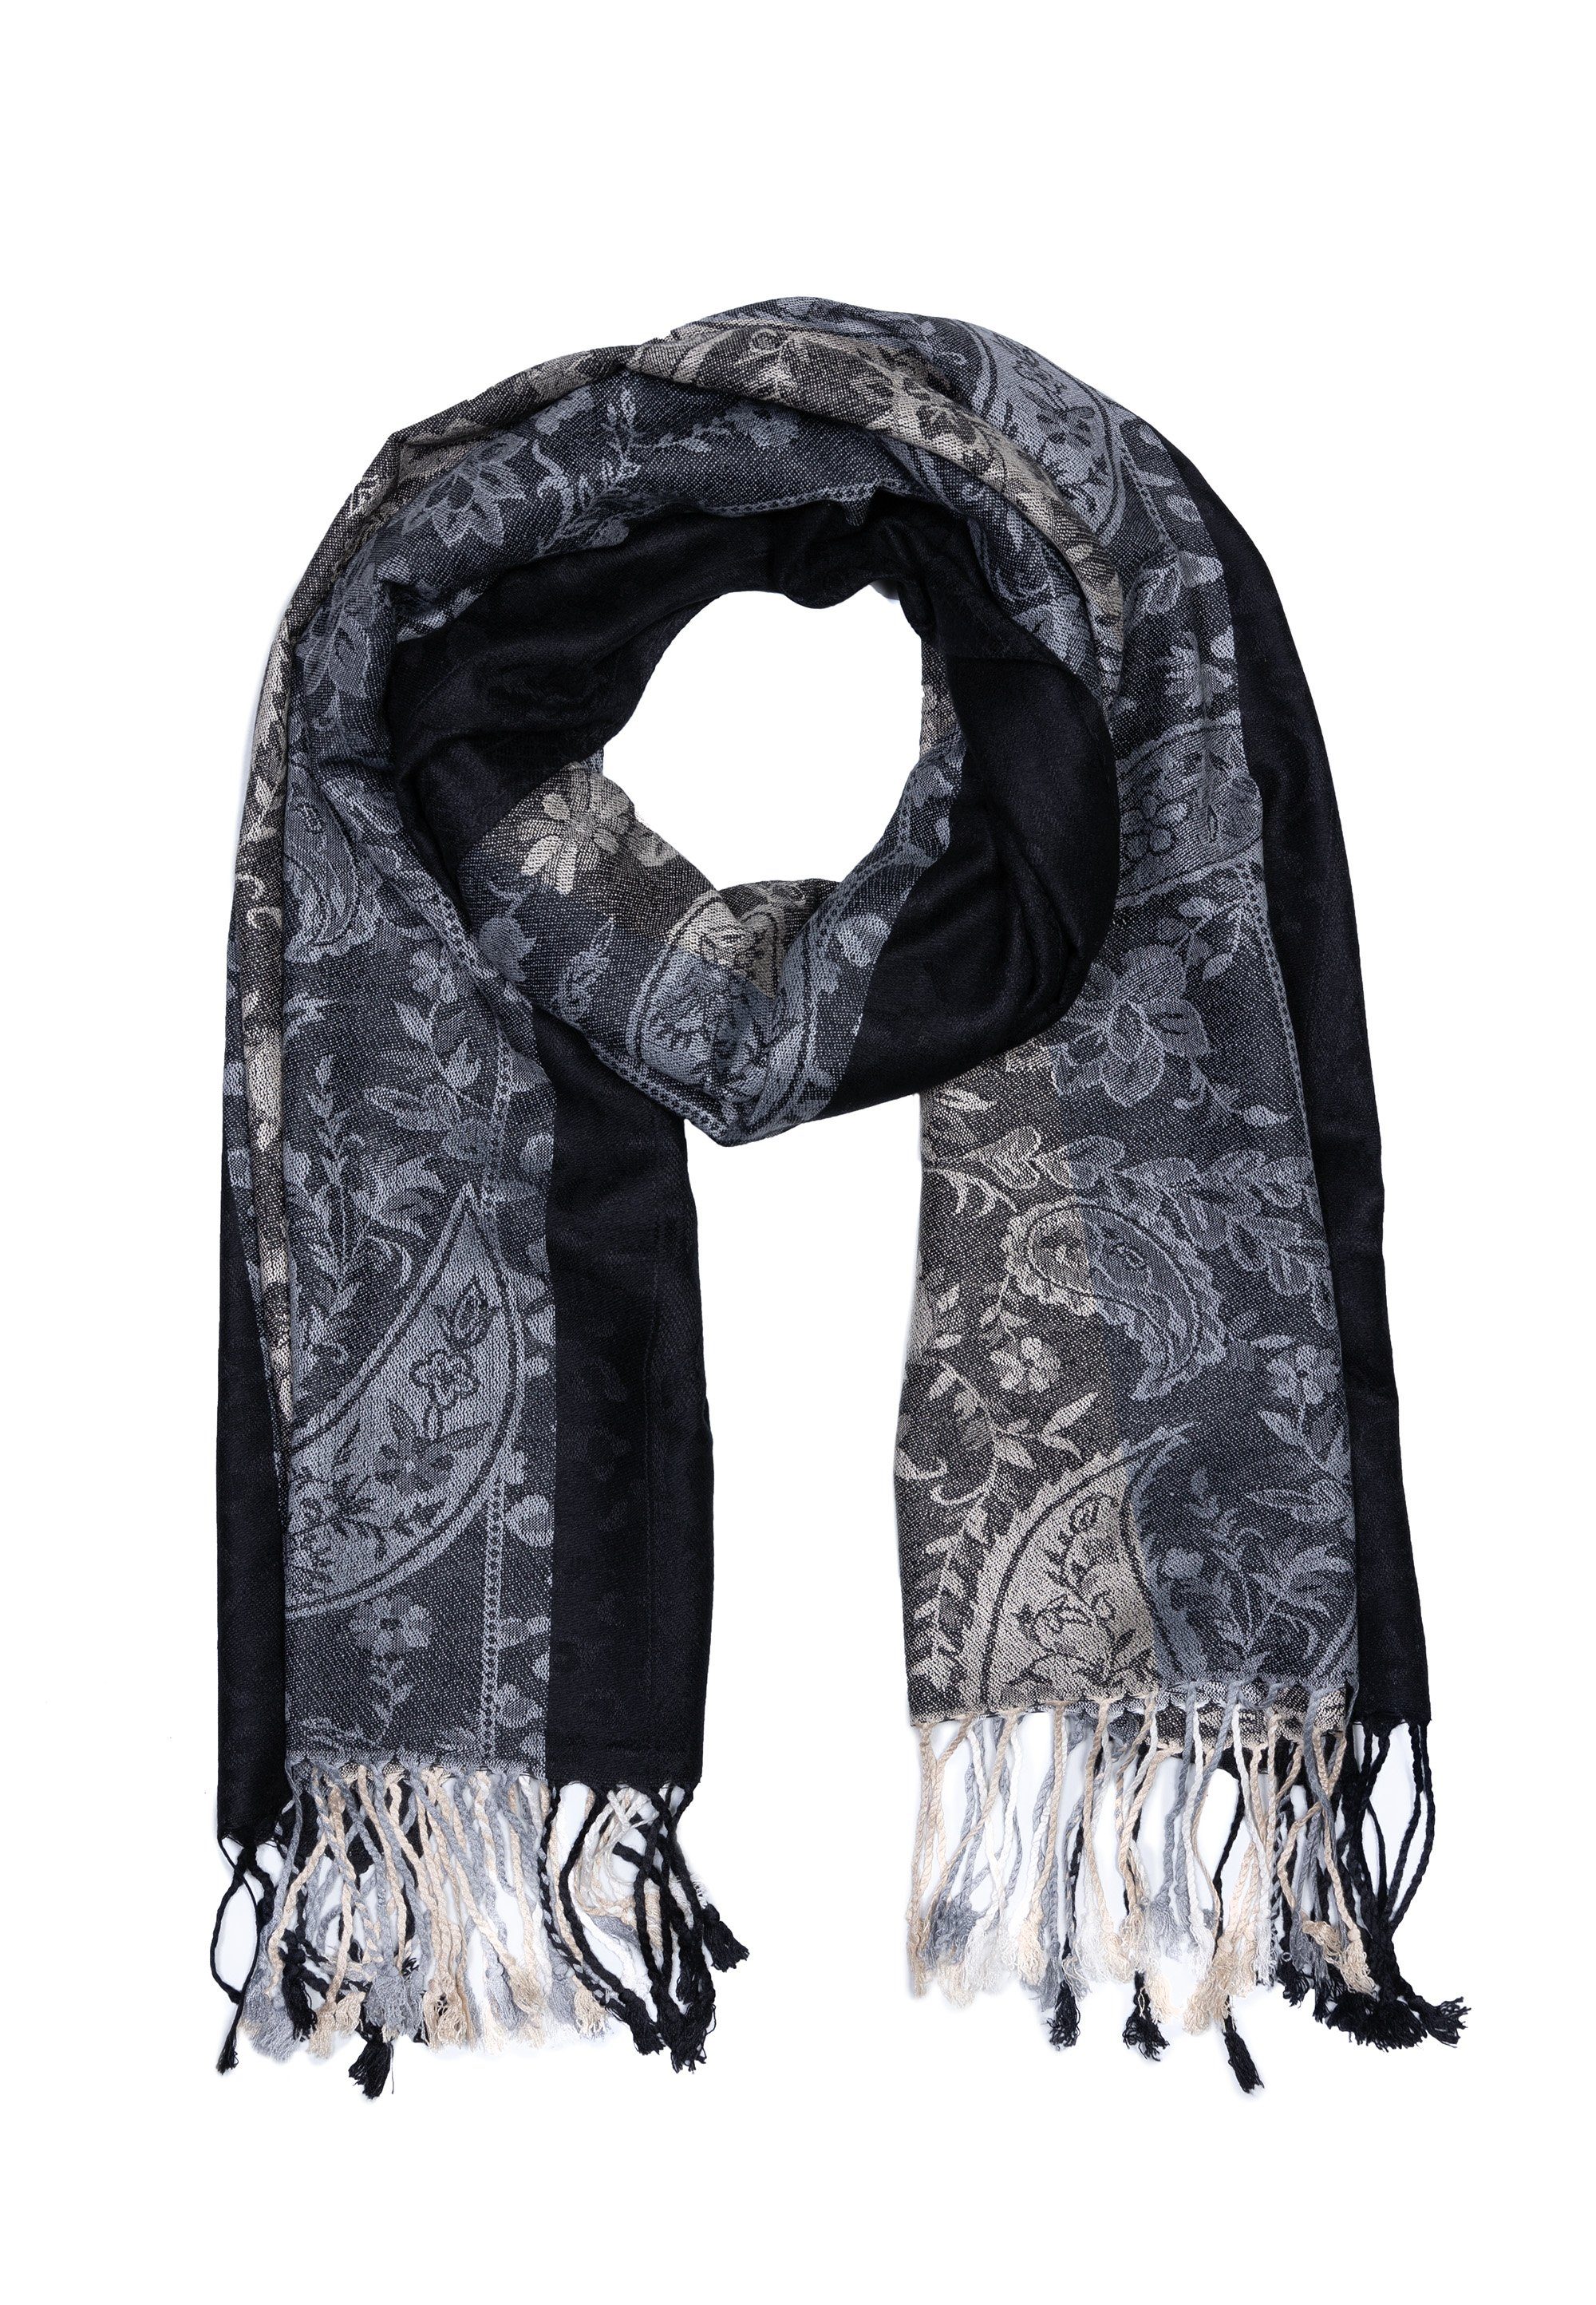 Goodman Sehr Romantik Design Schal Modeschal hochwertiges Farben, Material lebendigen mit Schwarz